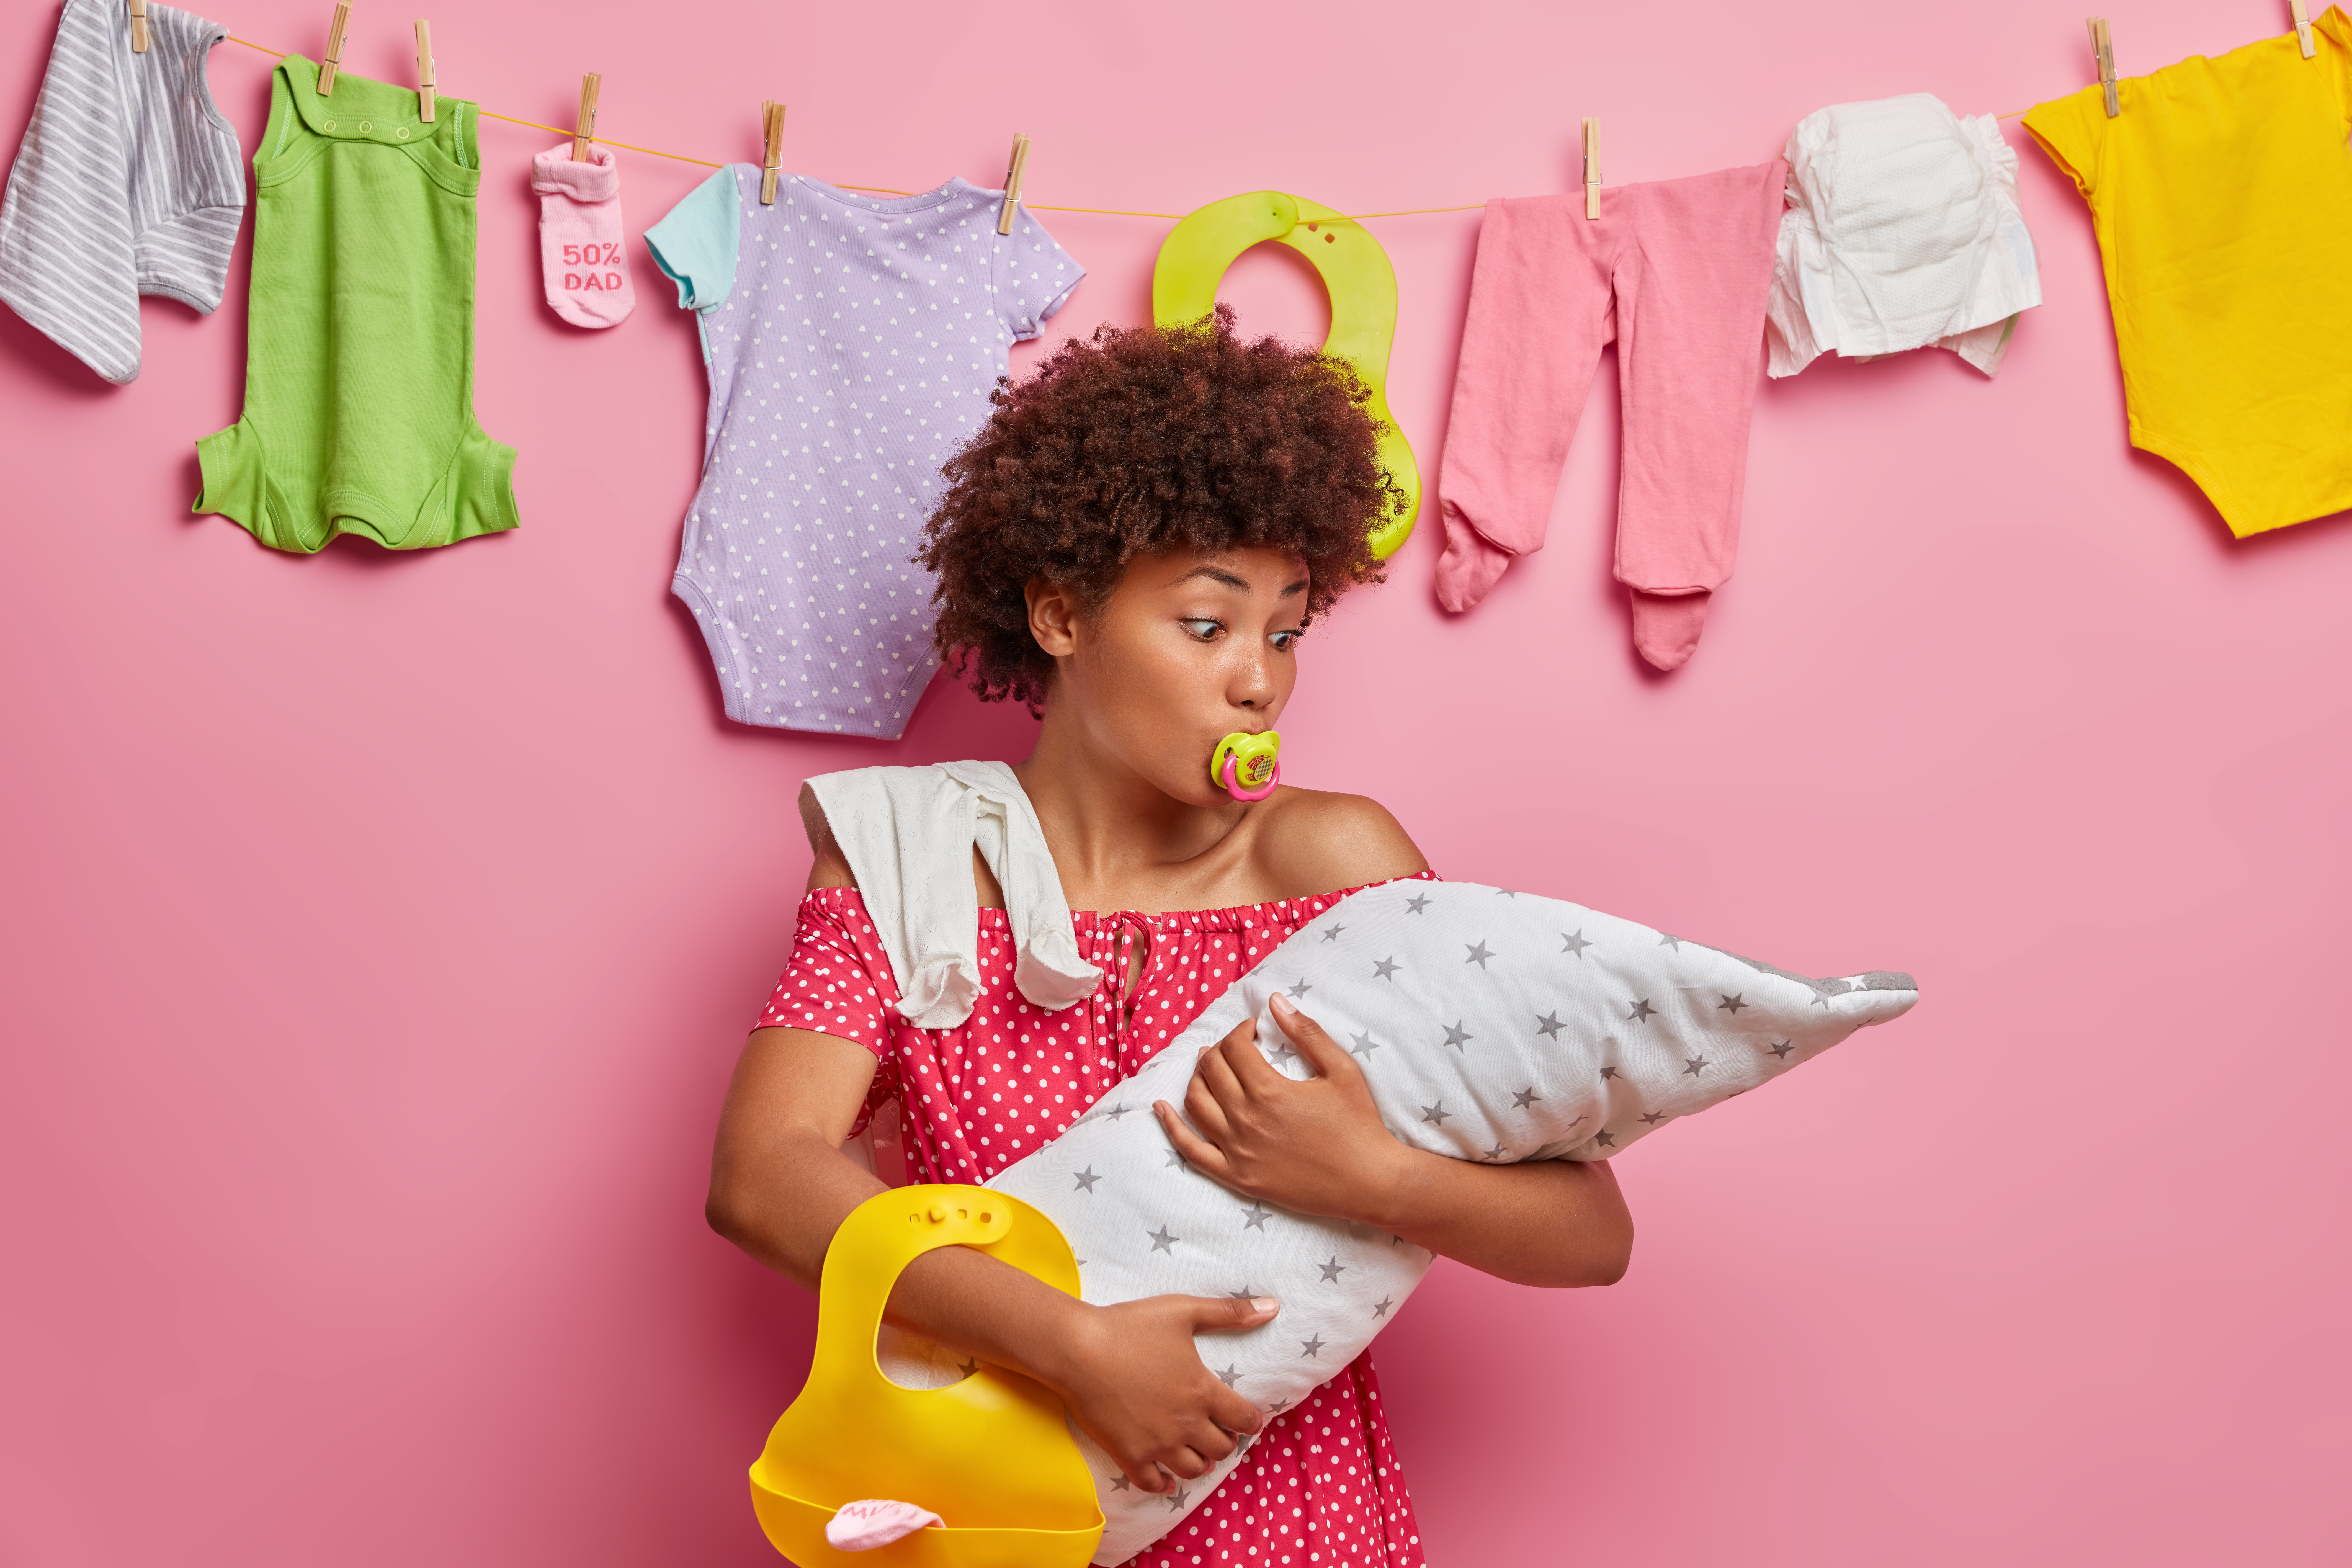 Artykuły dla niemowląt. Jak wybrać najlepsze produkty dla Twojego dziecka?